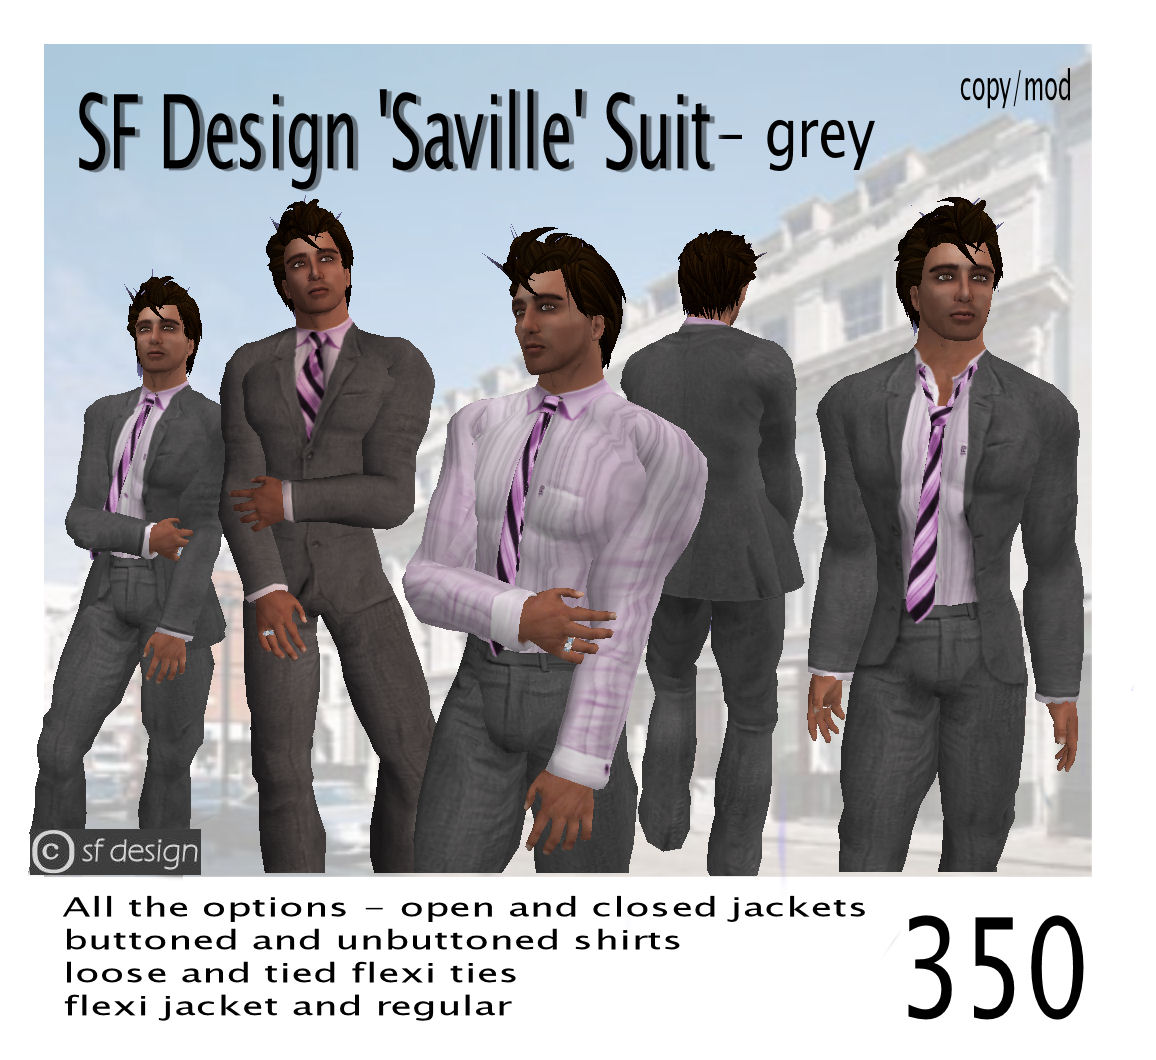 [saville+suit+grey.jpg]